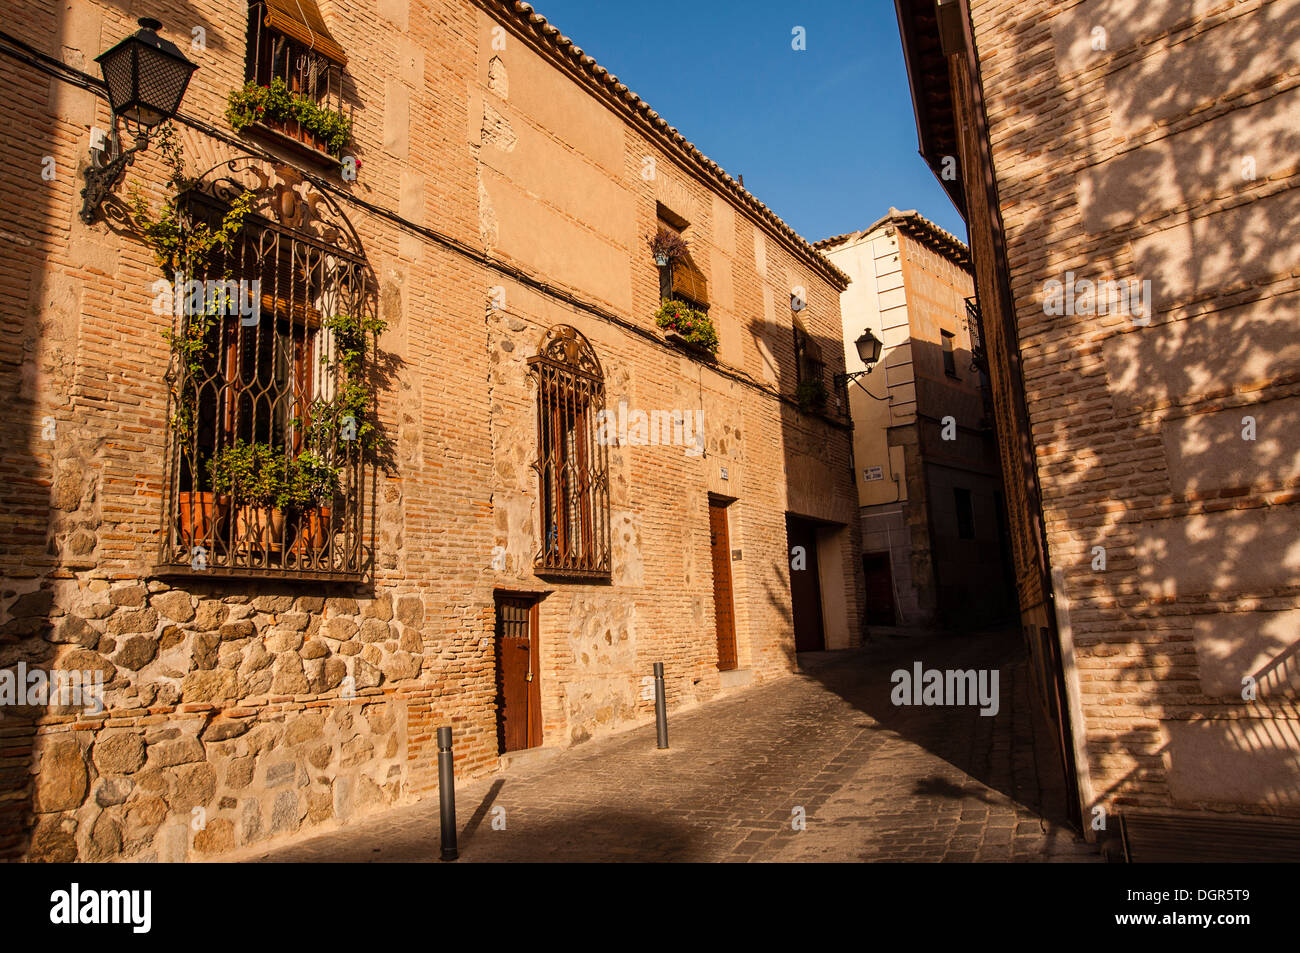 Centro histórico de la ciudad de Toledo, Castilla la Mancha, España Stock Photo